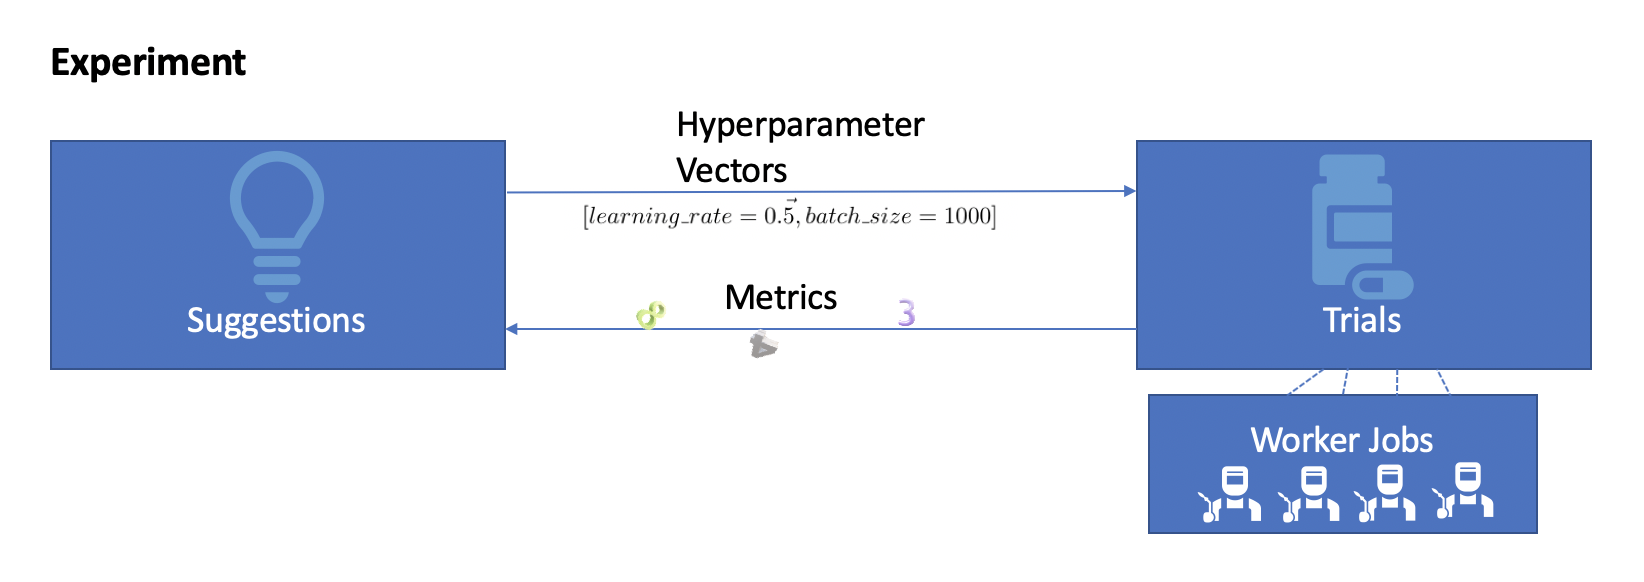 Hyperparameter tuning